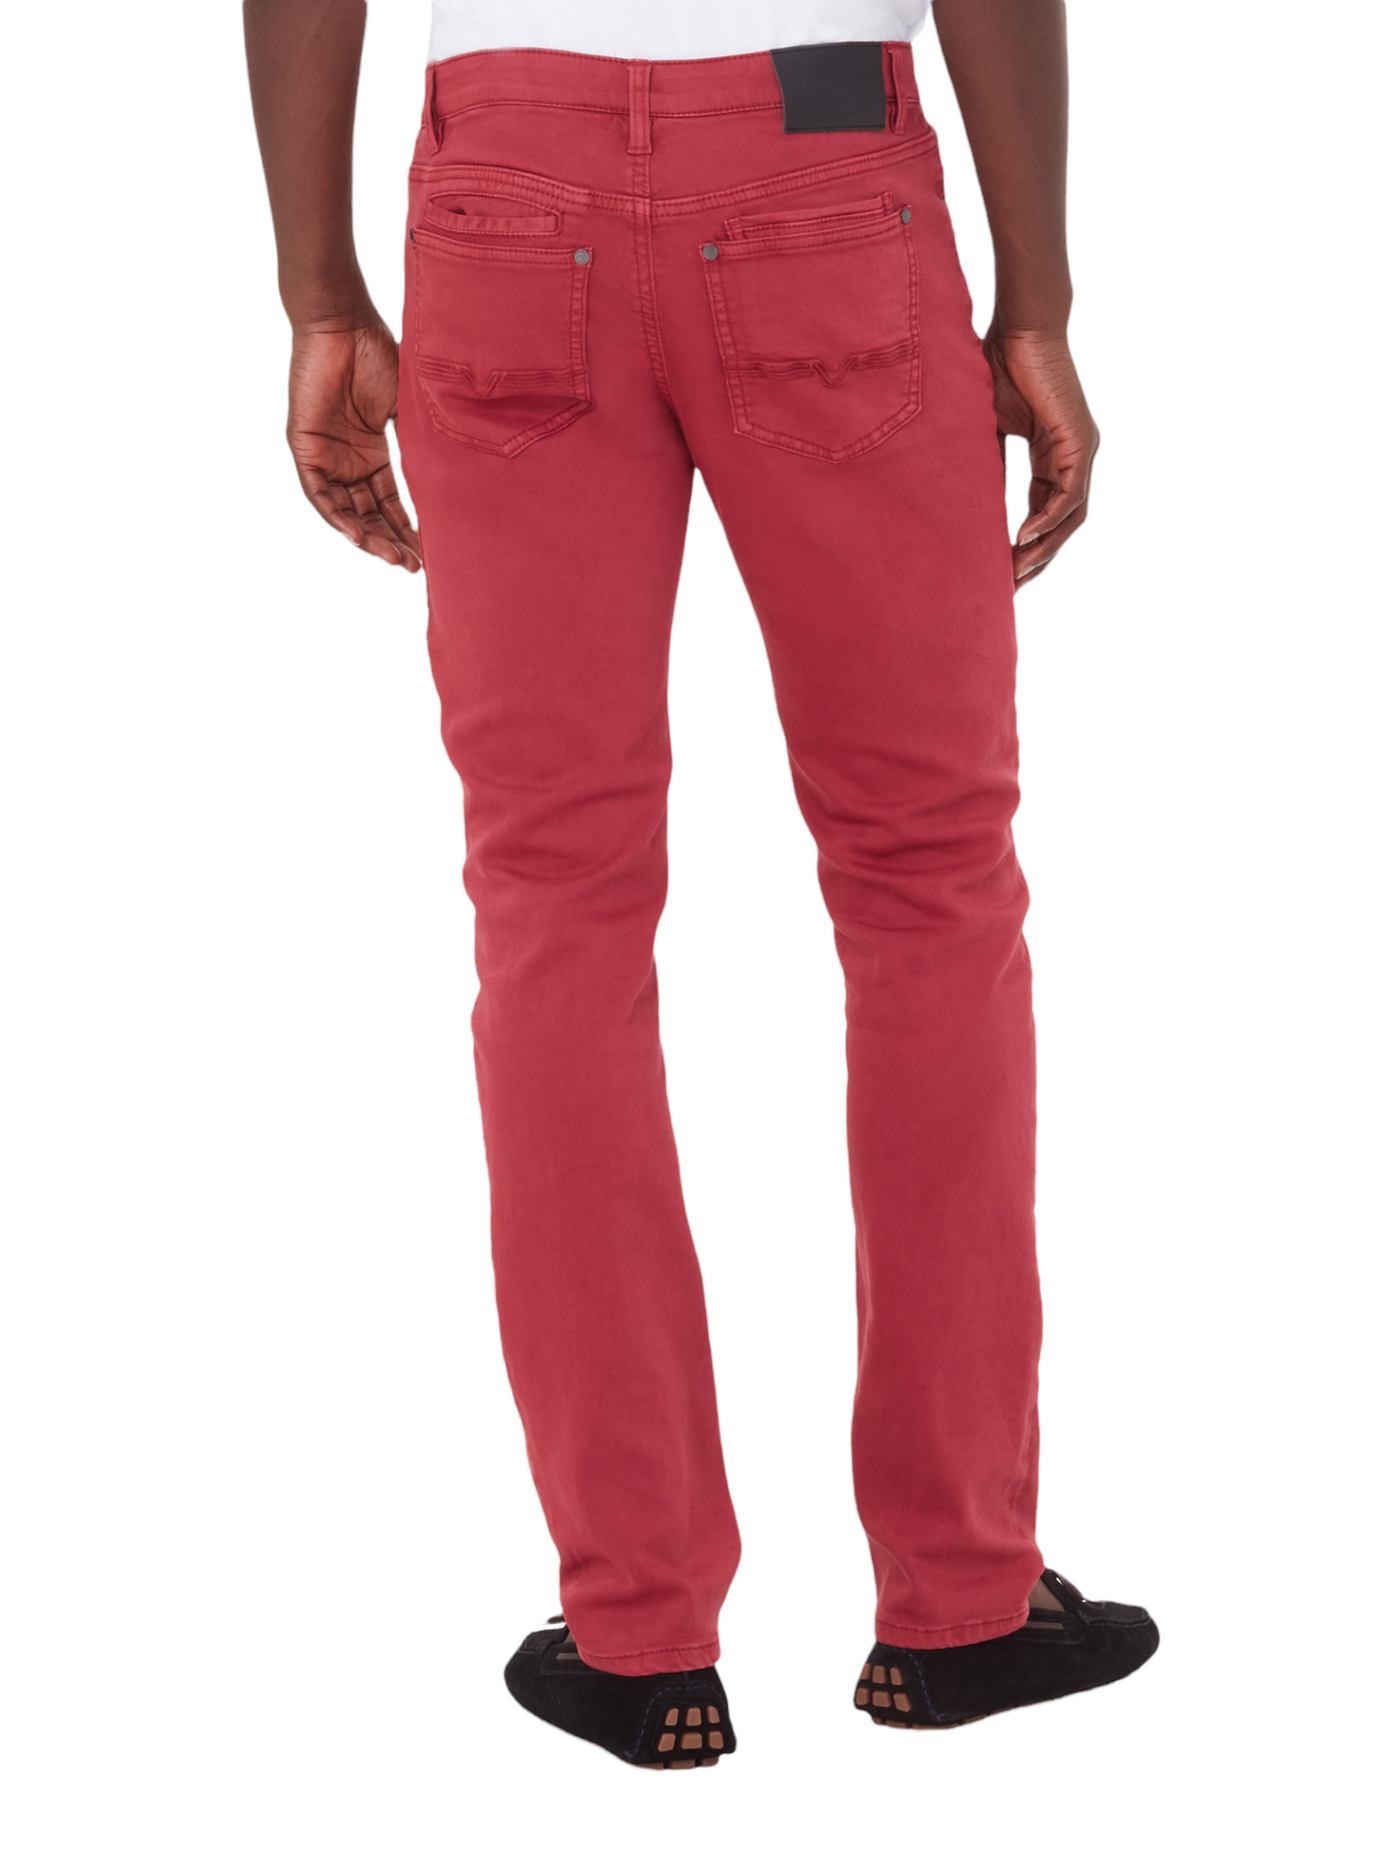 Pantalon de coton extensible framboise coupe semi-ajustée